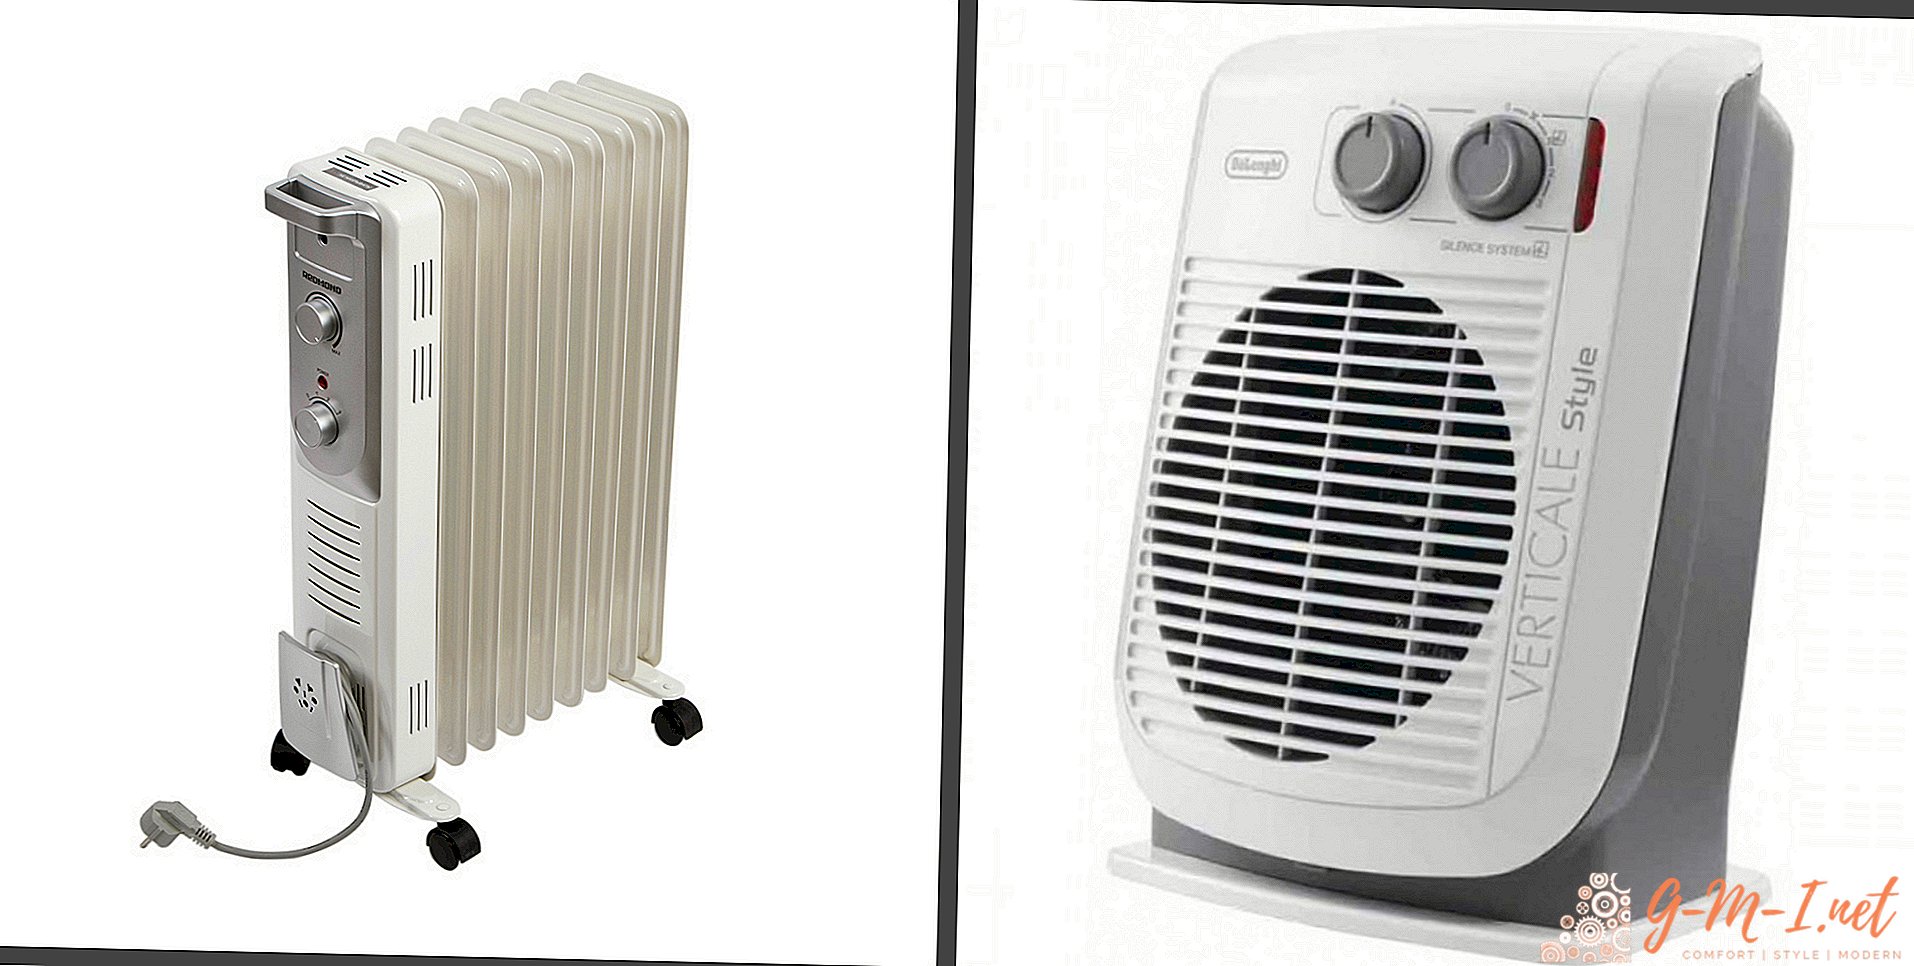 Ce este mai bine încălzitor ventilator sau încălzitor ulei